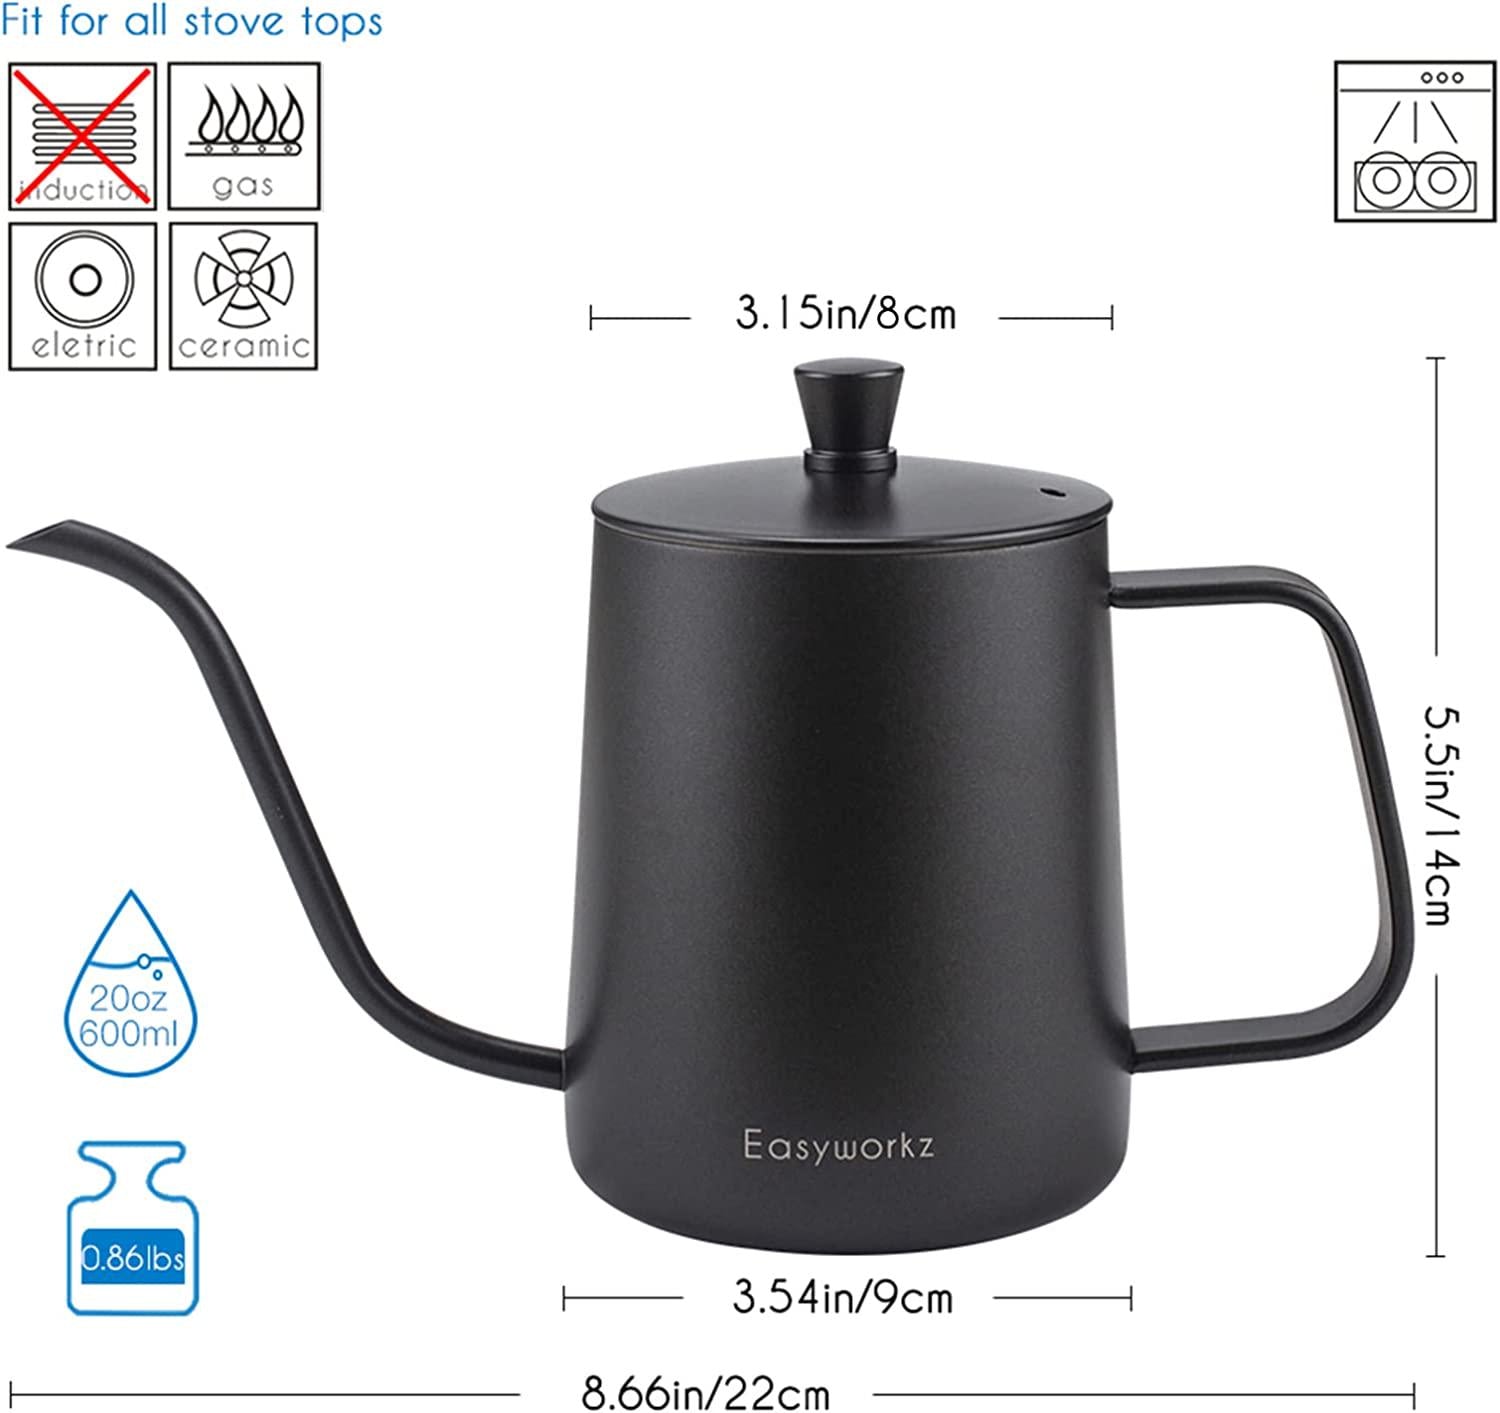 Easyworkz, Easyworkz Gage Pour Over Kettle Stainless Steel Gooseneck Long Narrow Drip Spout Coffee Tea Pot 600ml